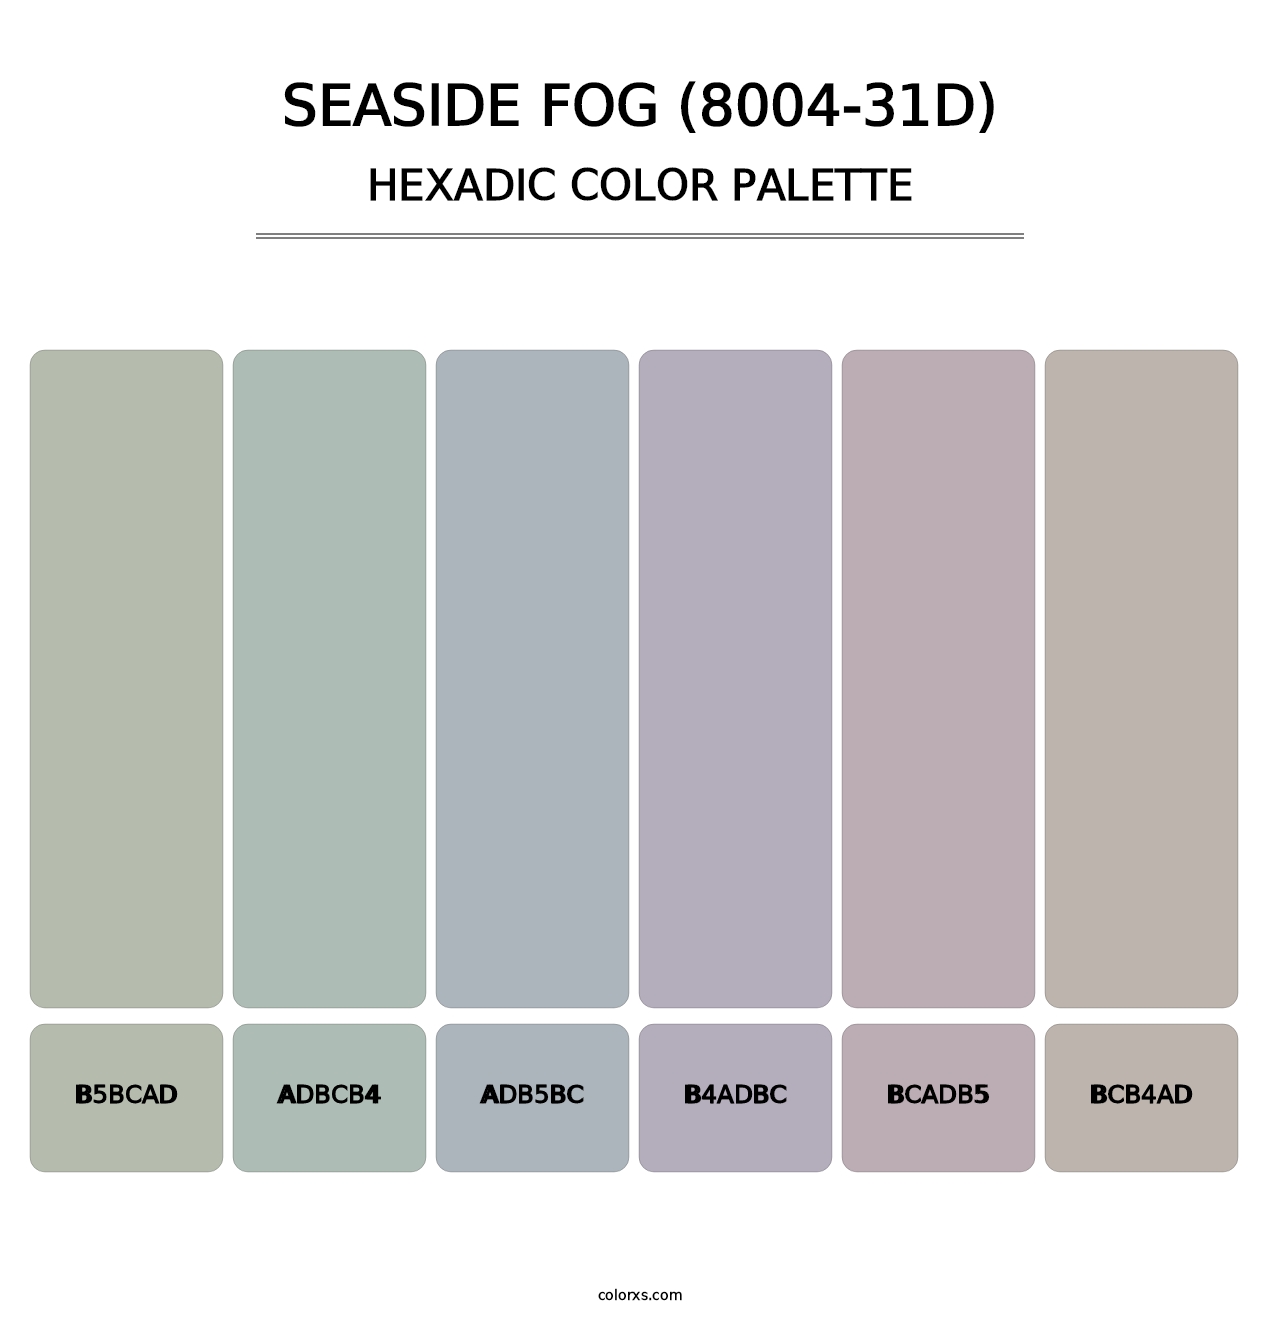 Seaside Fog (8004-31D) - Hexadic Color Palette